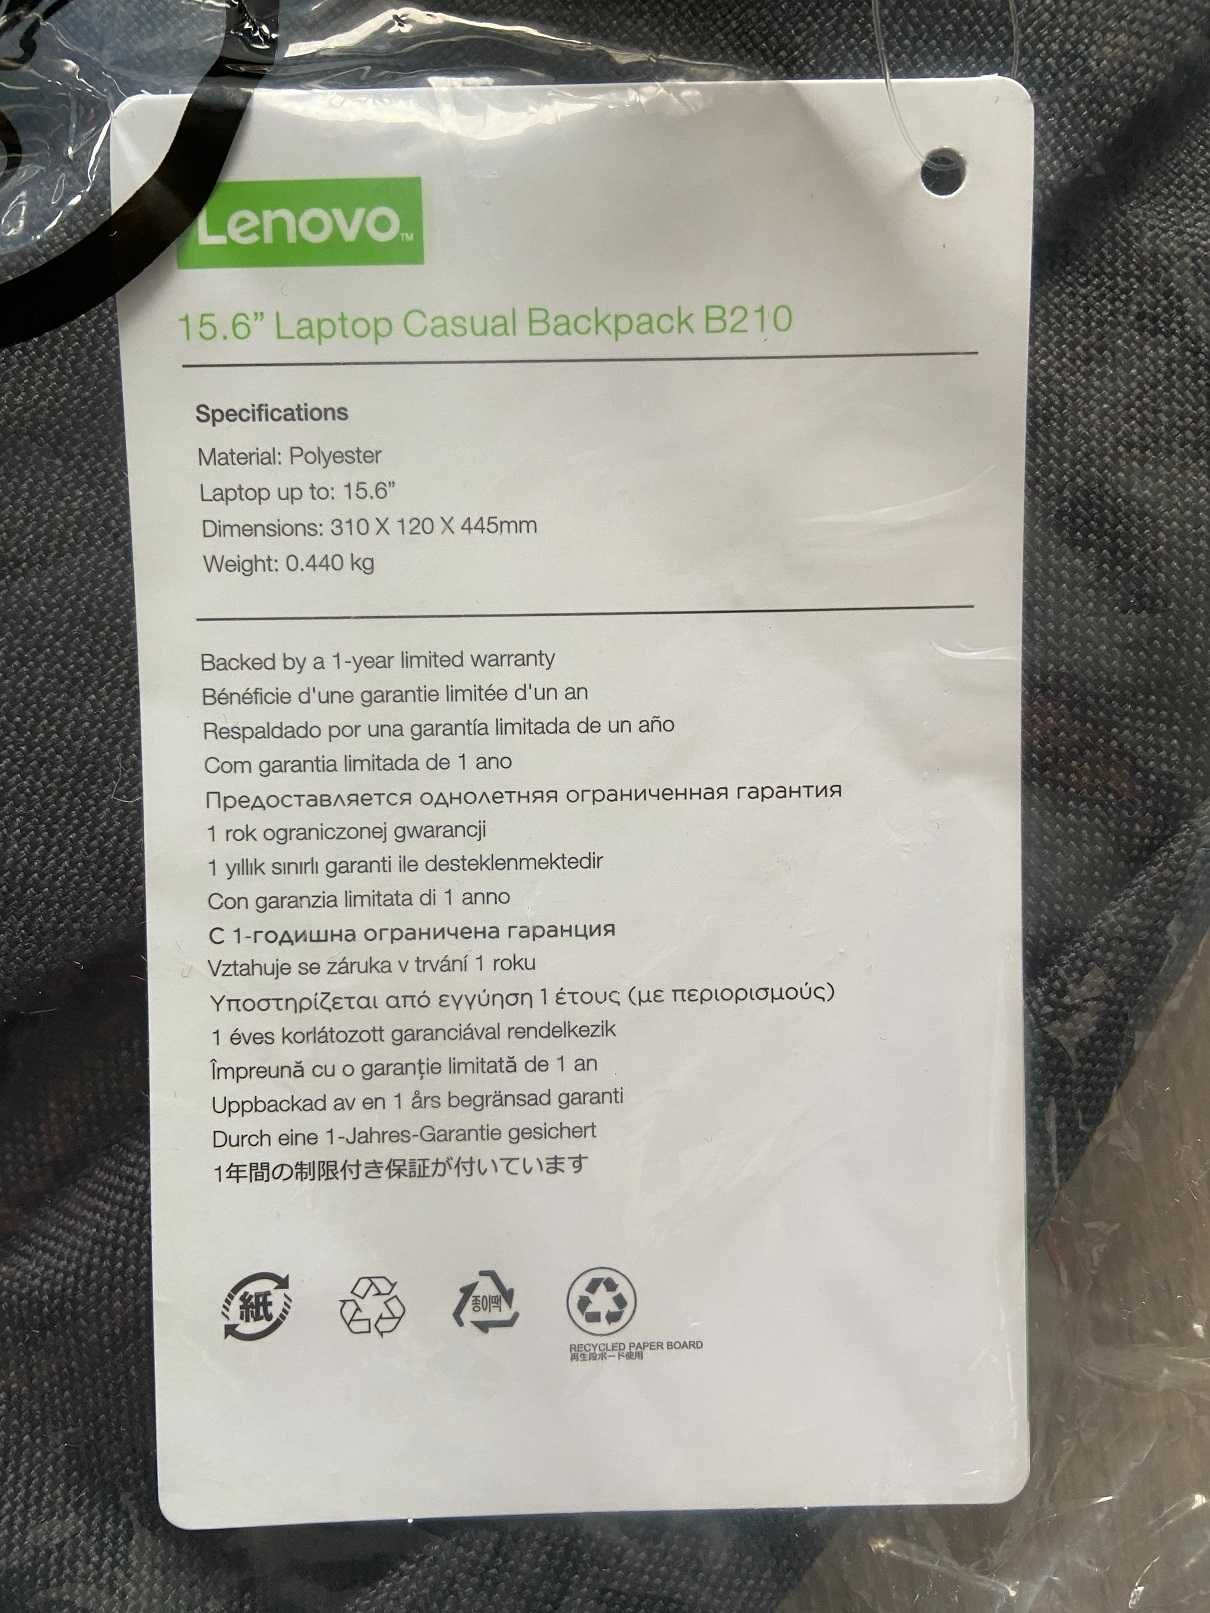 Plecak czarny, Lenovo B210 Casual Backup 15.6"